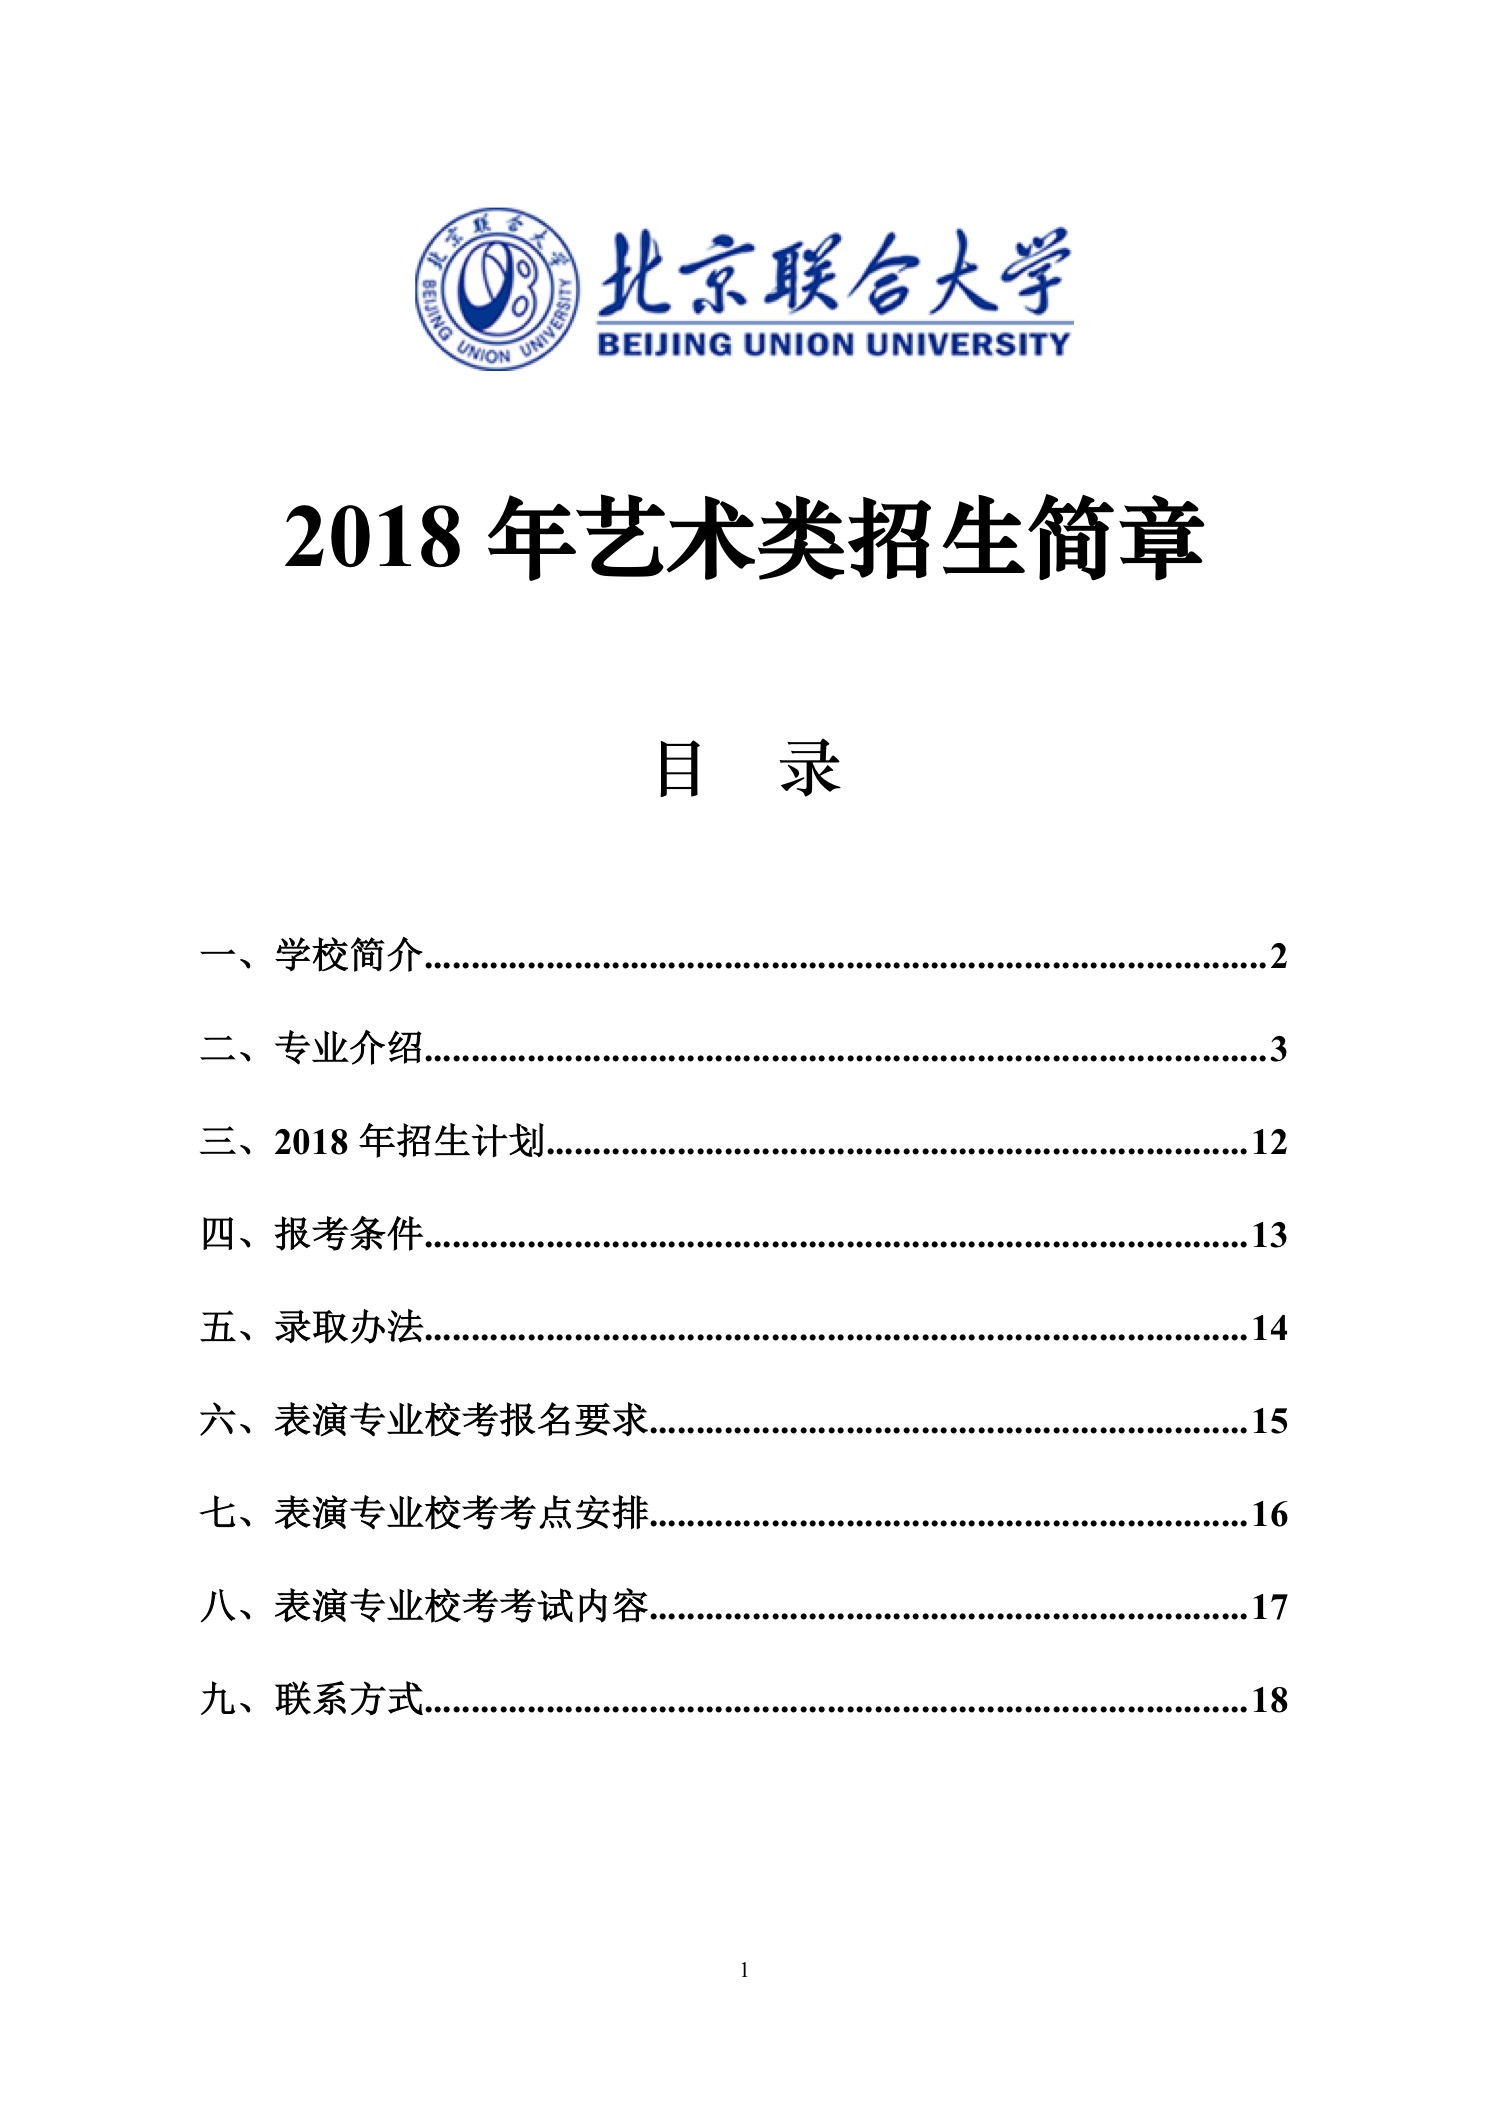 北京联合大学2018年艺术类招生简章20180103-page1 2.jpeg